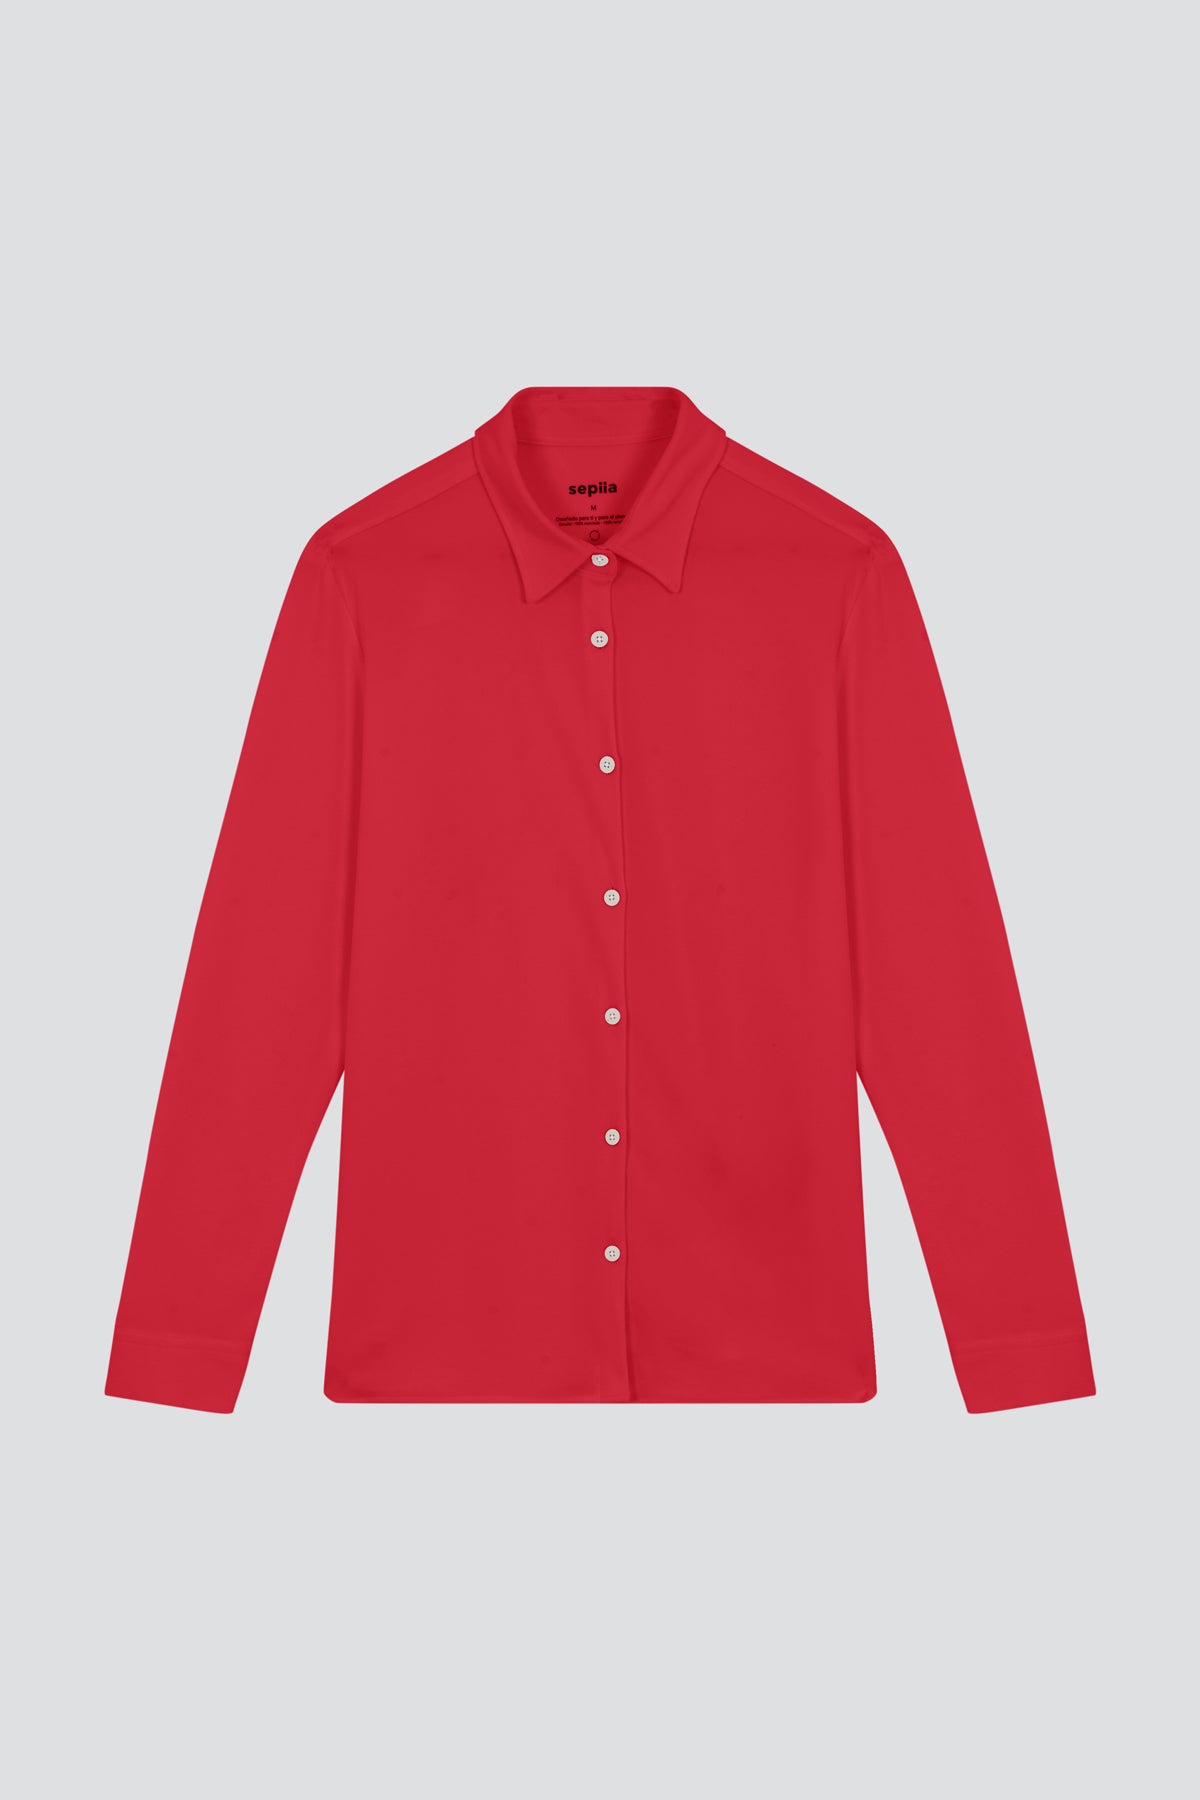 Camisa rojo atlanta oversize de Sepiia, elegante y resistente a manchas y arrugas. Foto en plano